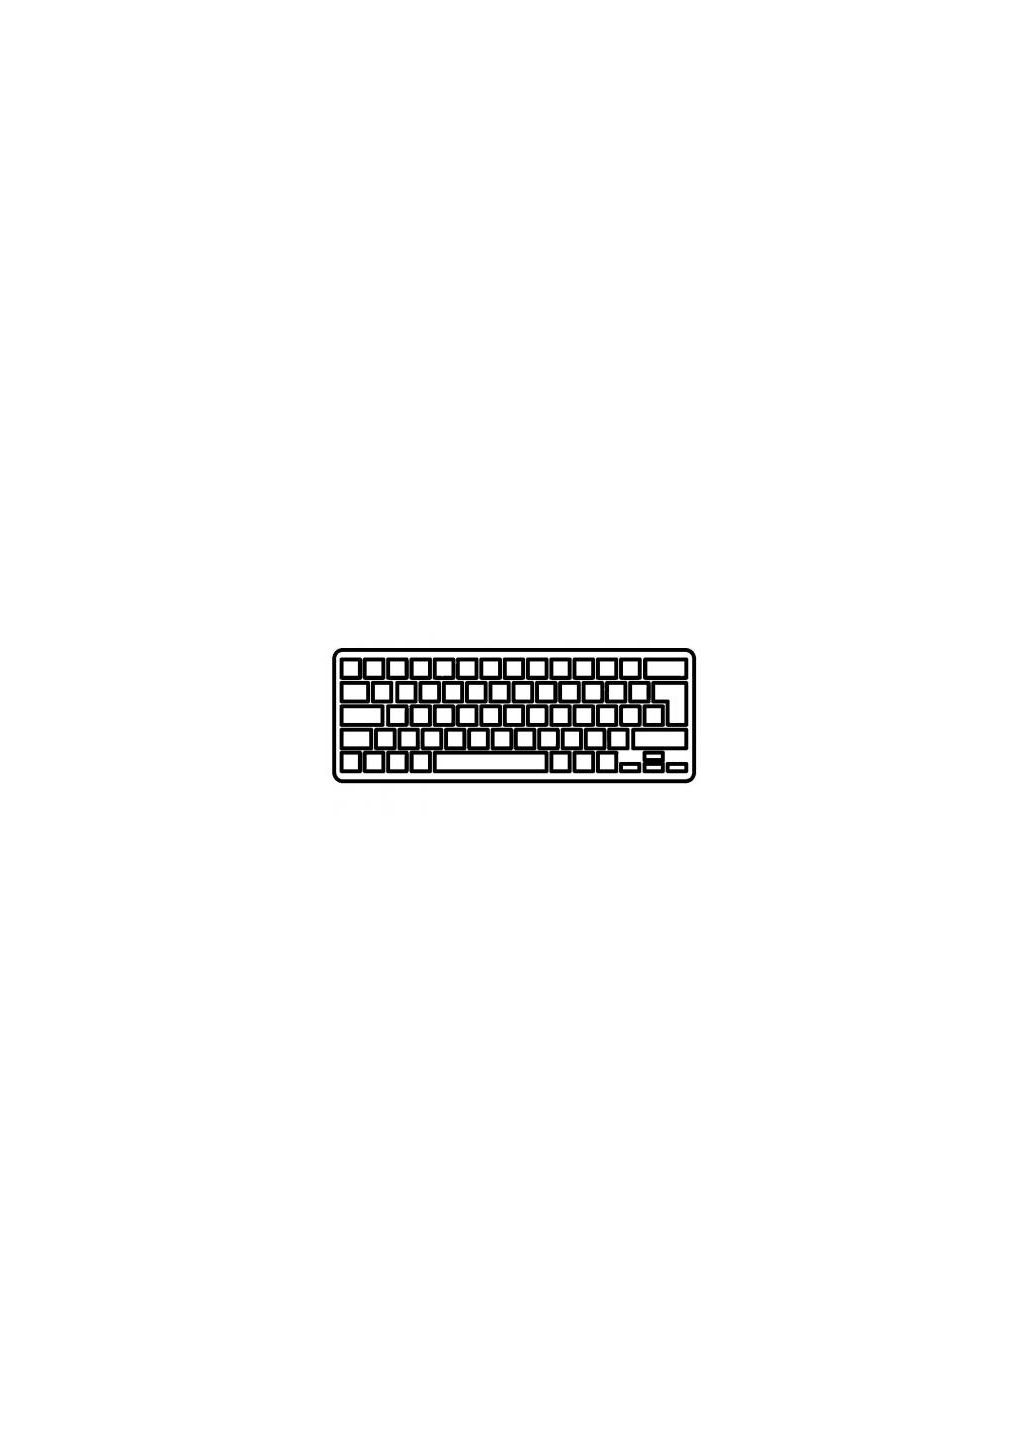 Клавиатура ноутбука Aspire V5122P Series черная без рамки UA (A43637) Acer aspire v5-122p series черная без рамки ua (276706605)